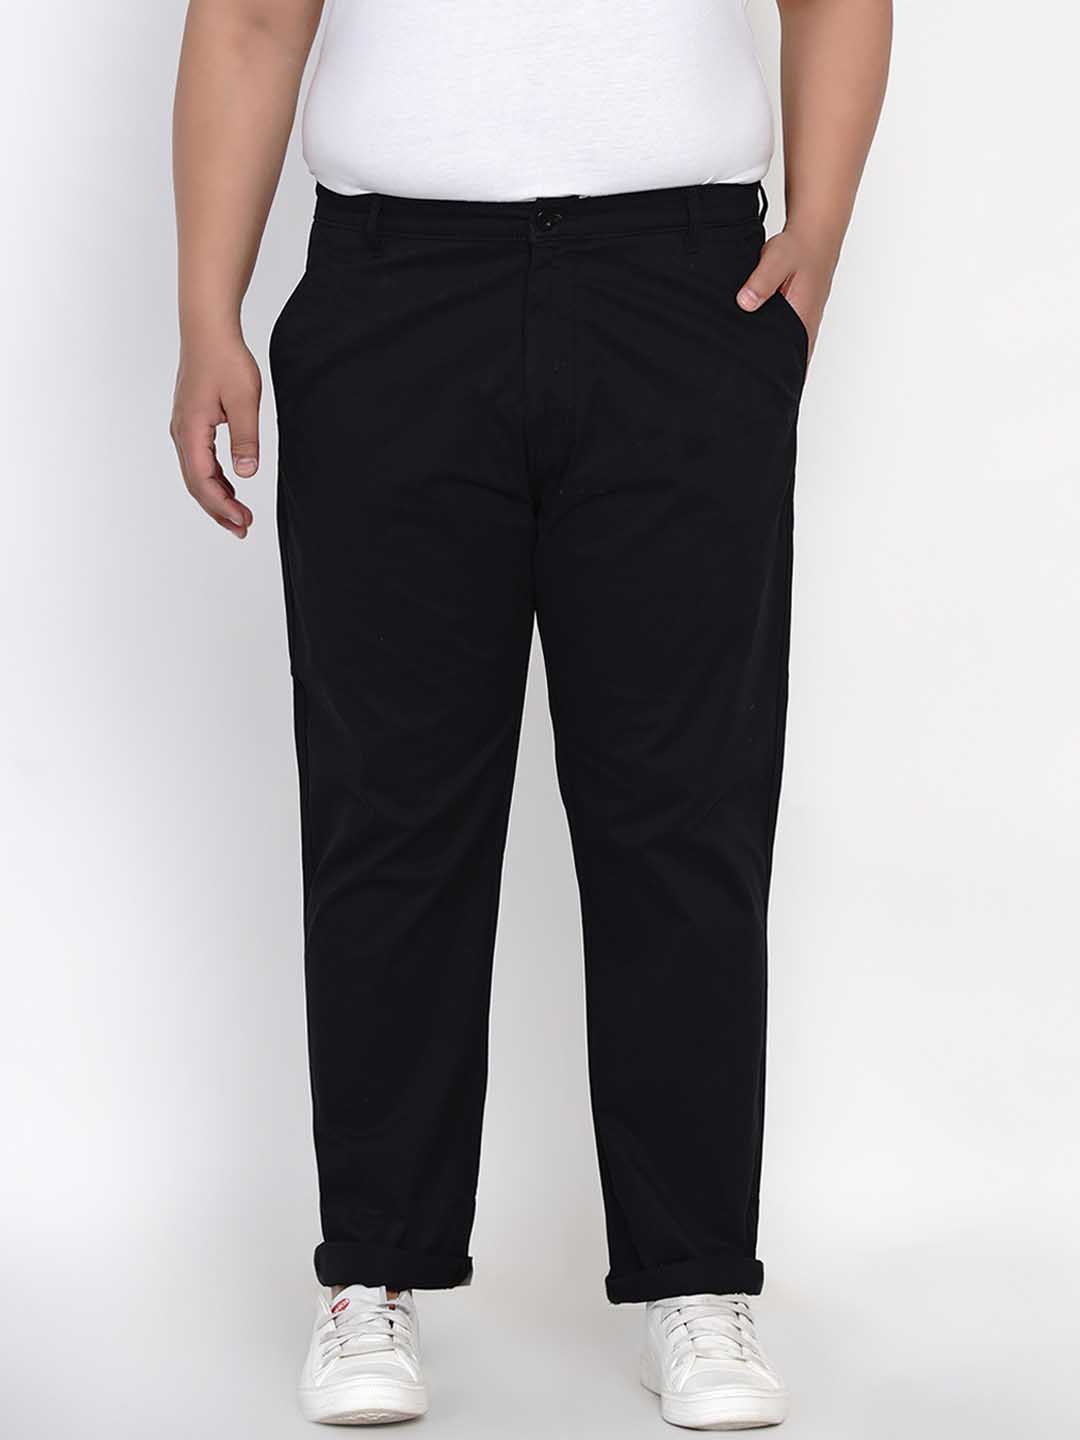 bottomwear/trousers/JPTR2195D/jptr2195d-1.jpg